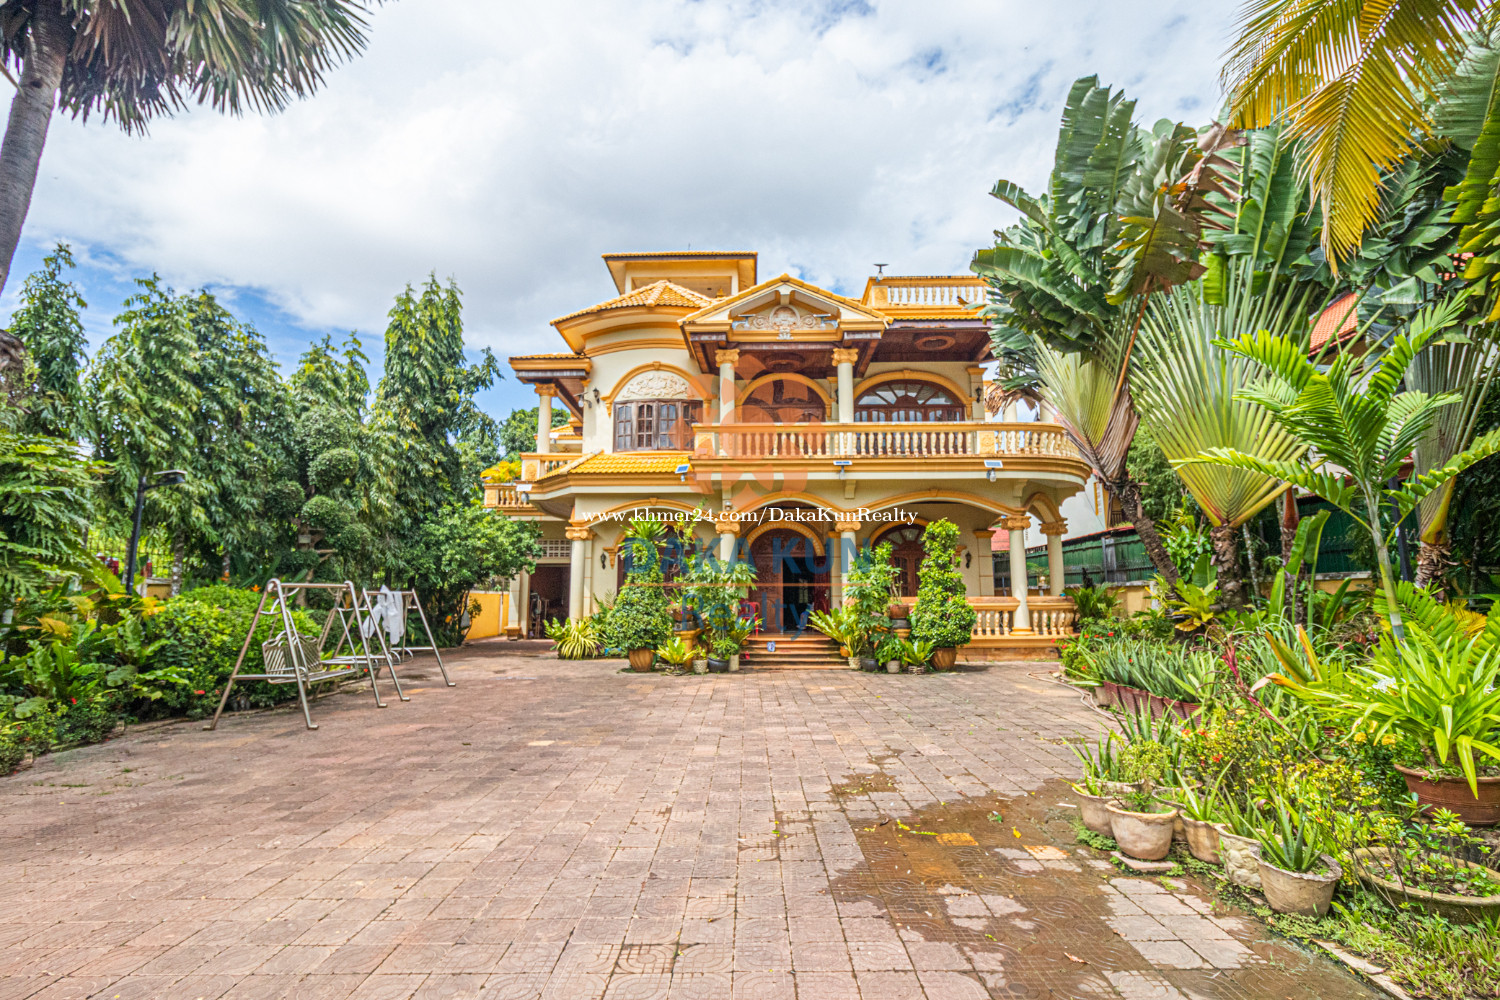 ផ្ទះវីឡាលក់នៅសាលាកំរើក, ក្រុងសៀមរាប/Villa for Sale in Krong Siem Reap- Sala Kamruek